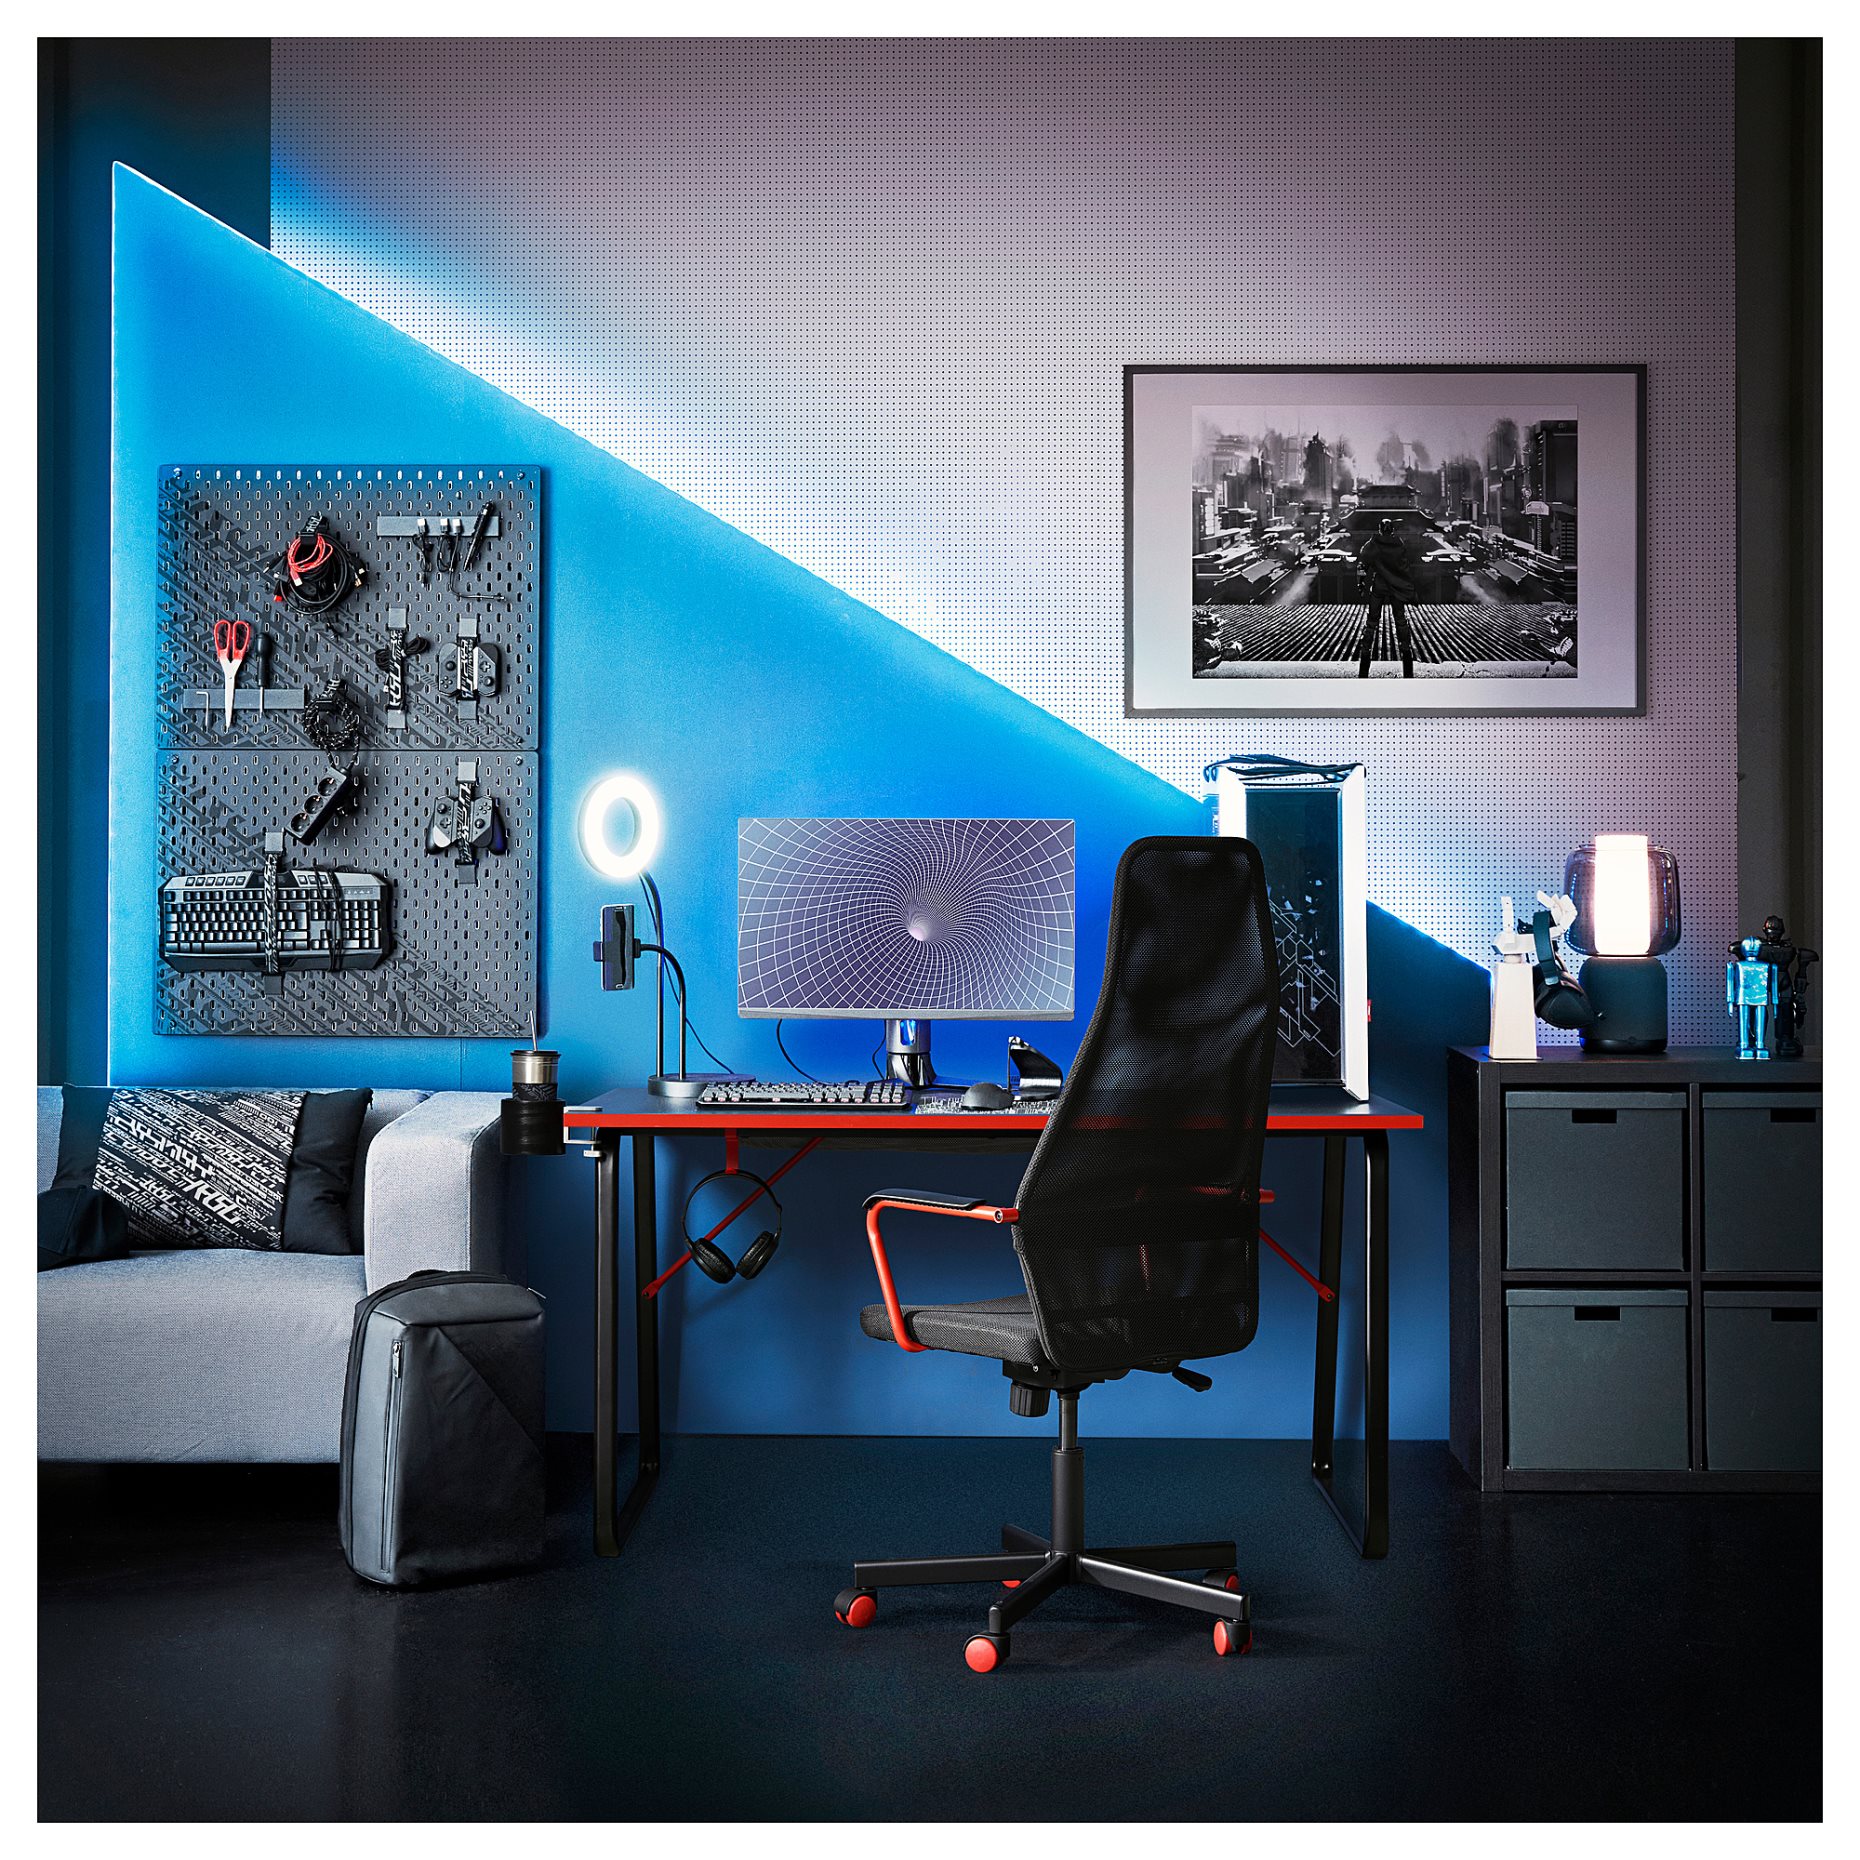 HUVUDSPELARE, gaming desk, 140x80 cm, 905.391.66